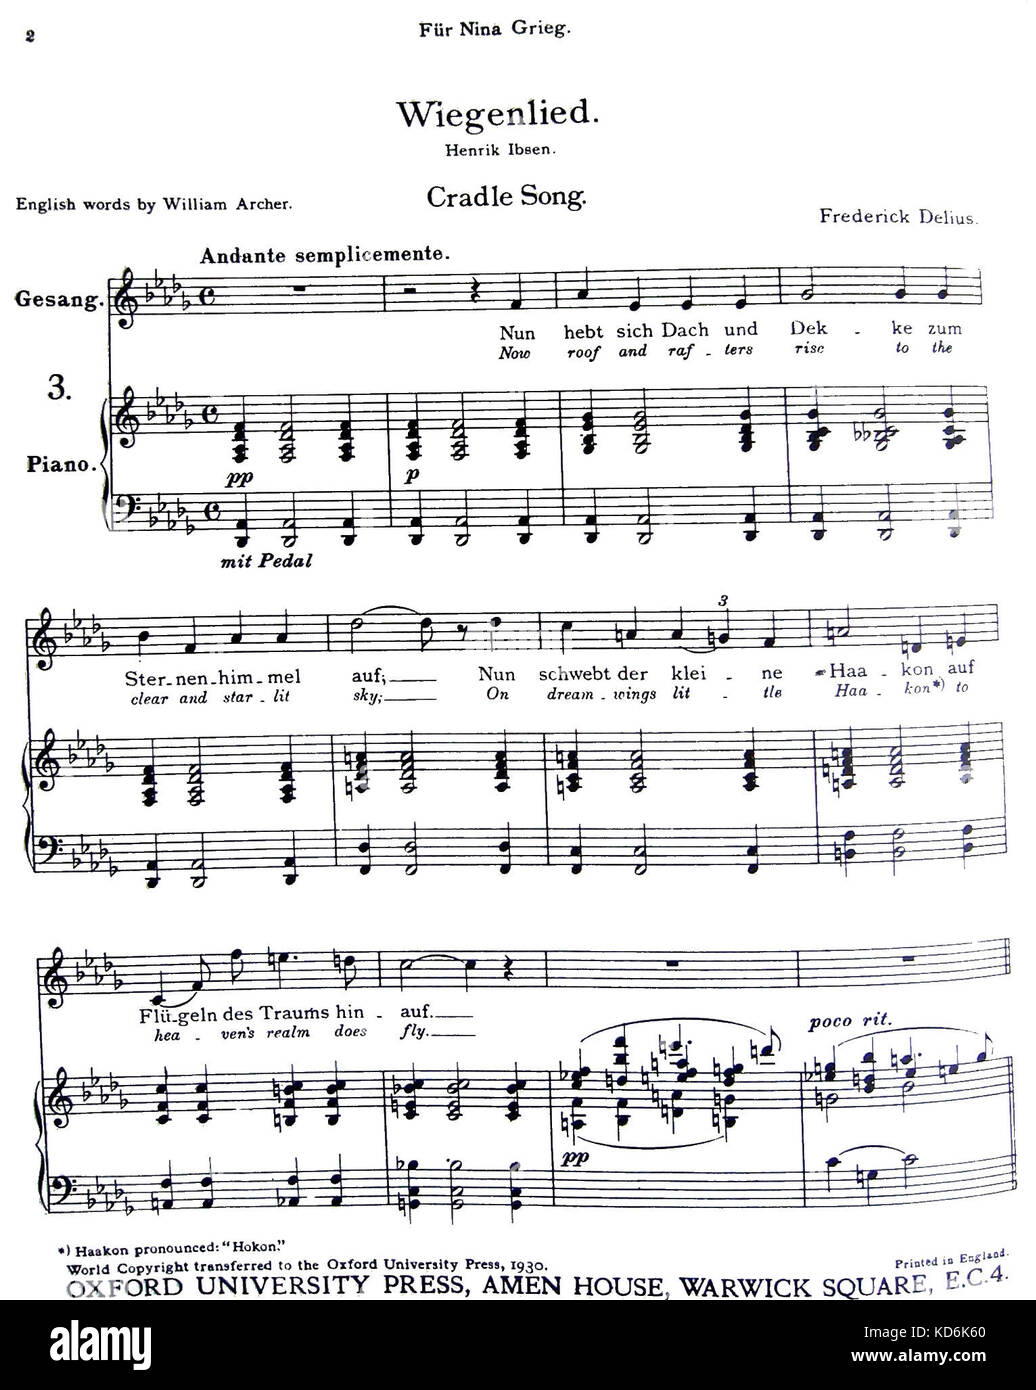 Frederick Delius' Cradle Song Score - Wiegenlied von Henrik Ibsen. Engagement über Score zu Nina Grieg (Ehefrau des Komponisten) englische Wörter von William Archer. London, OUP, 1930 veröffentlicht. Englische Komponist 1862-1934 Stockfoto